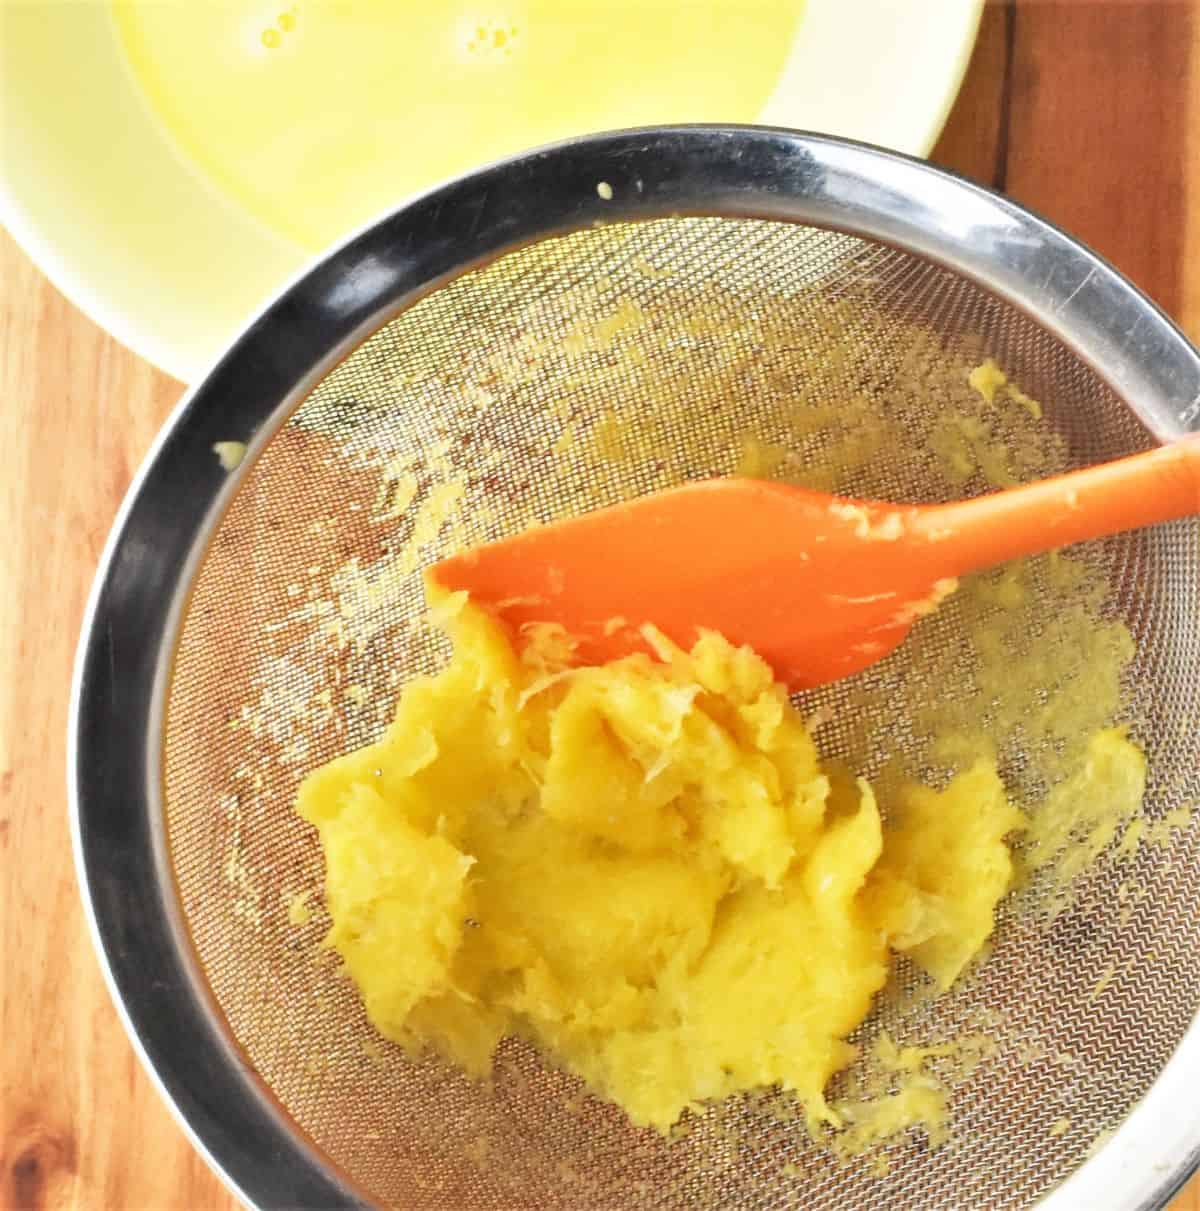 Orange pulp with orange spatula in sieve.